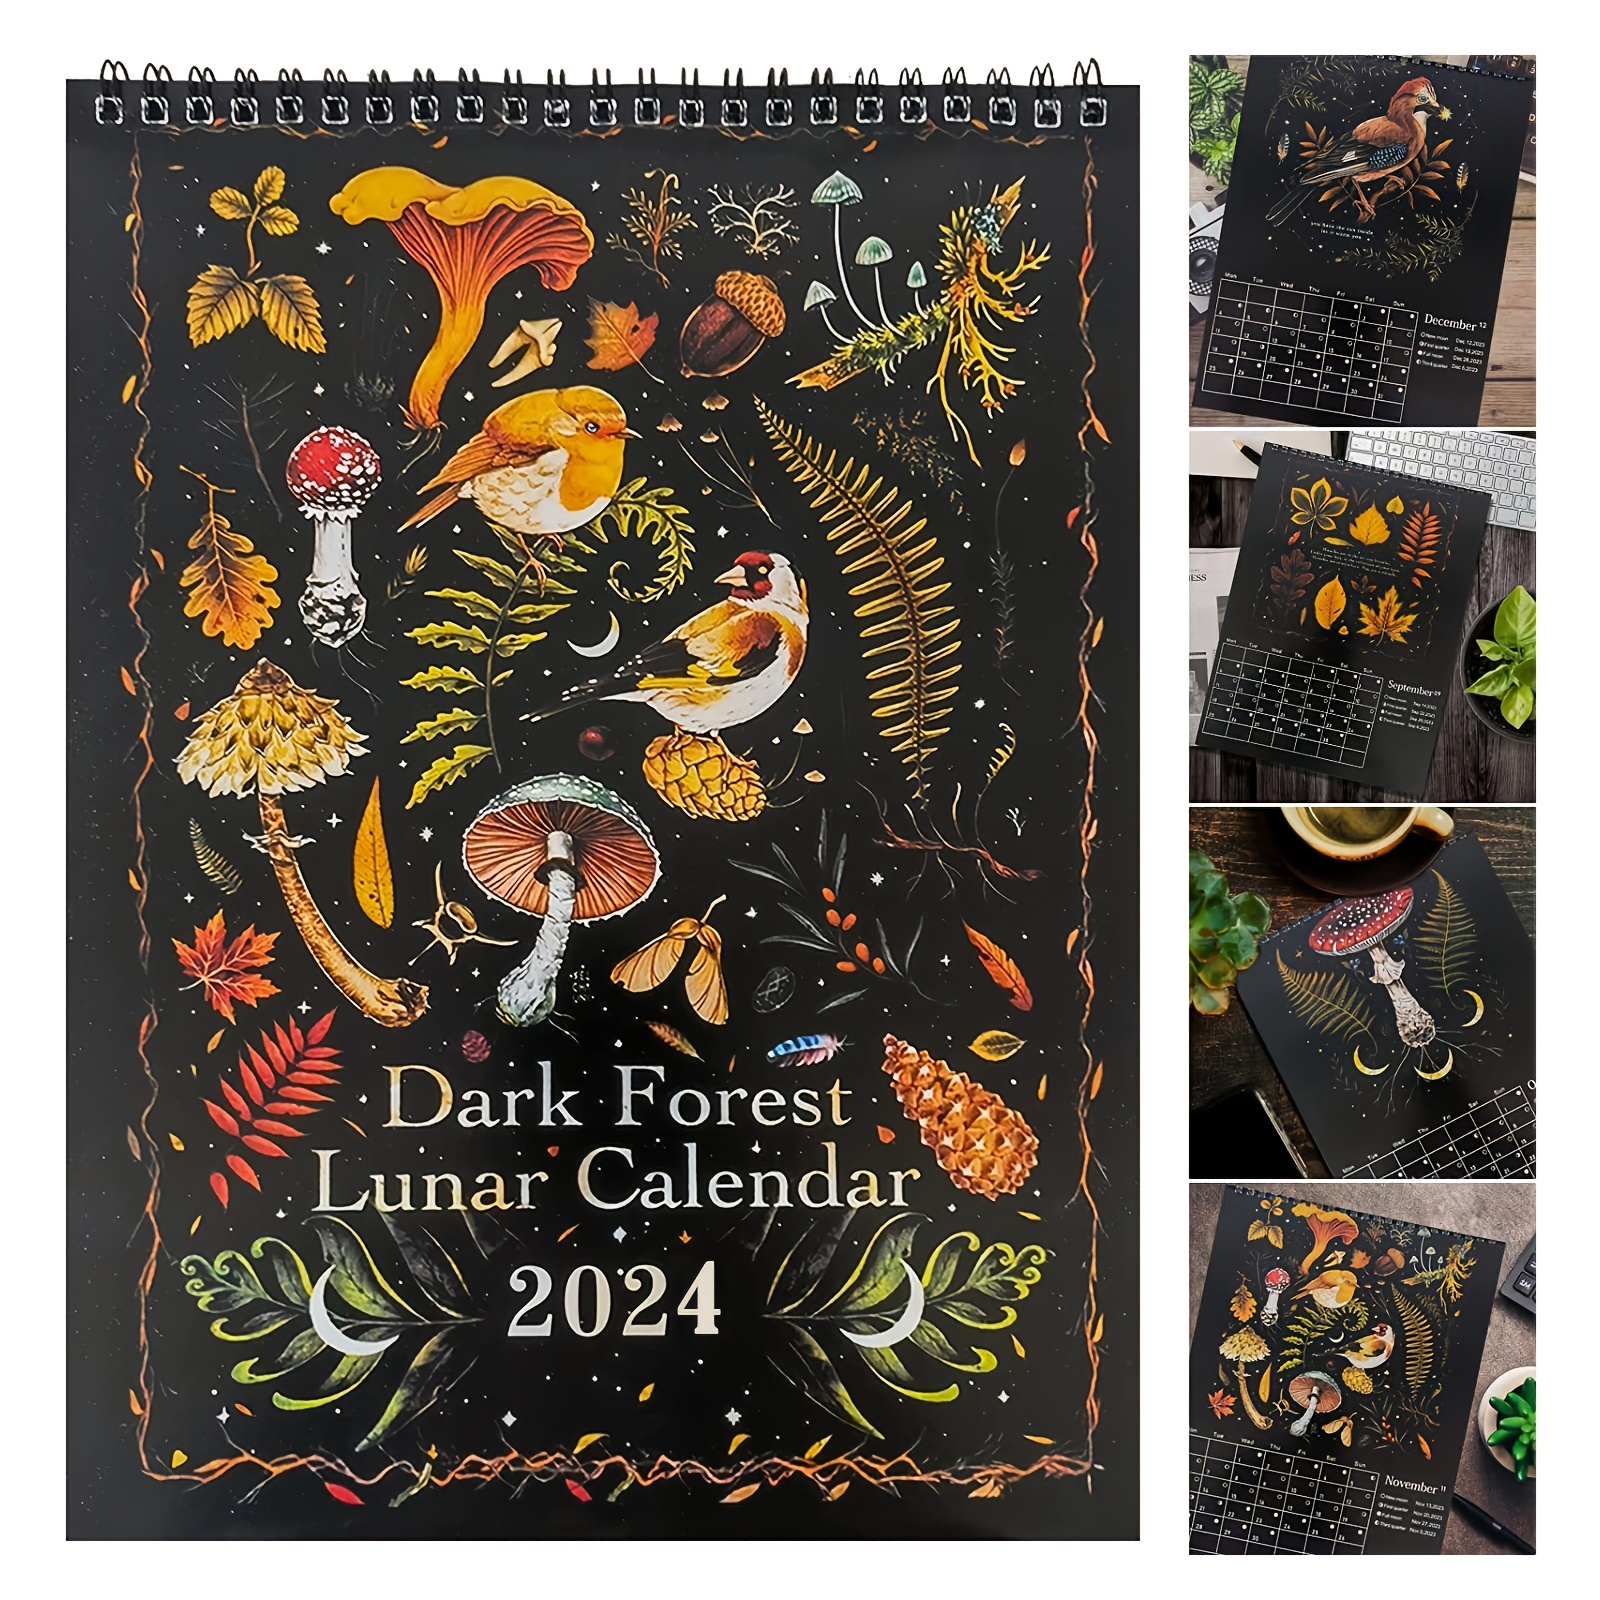 Dark Forest Lunar Calendar 2024 December 2022 Terra Margery